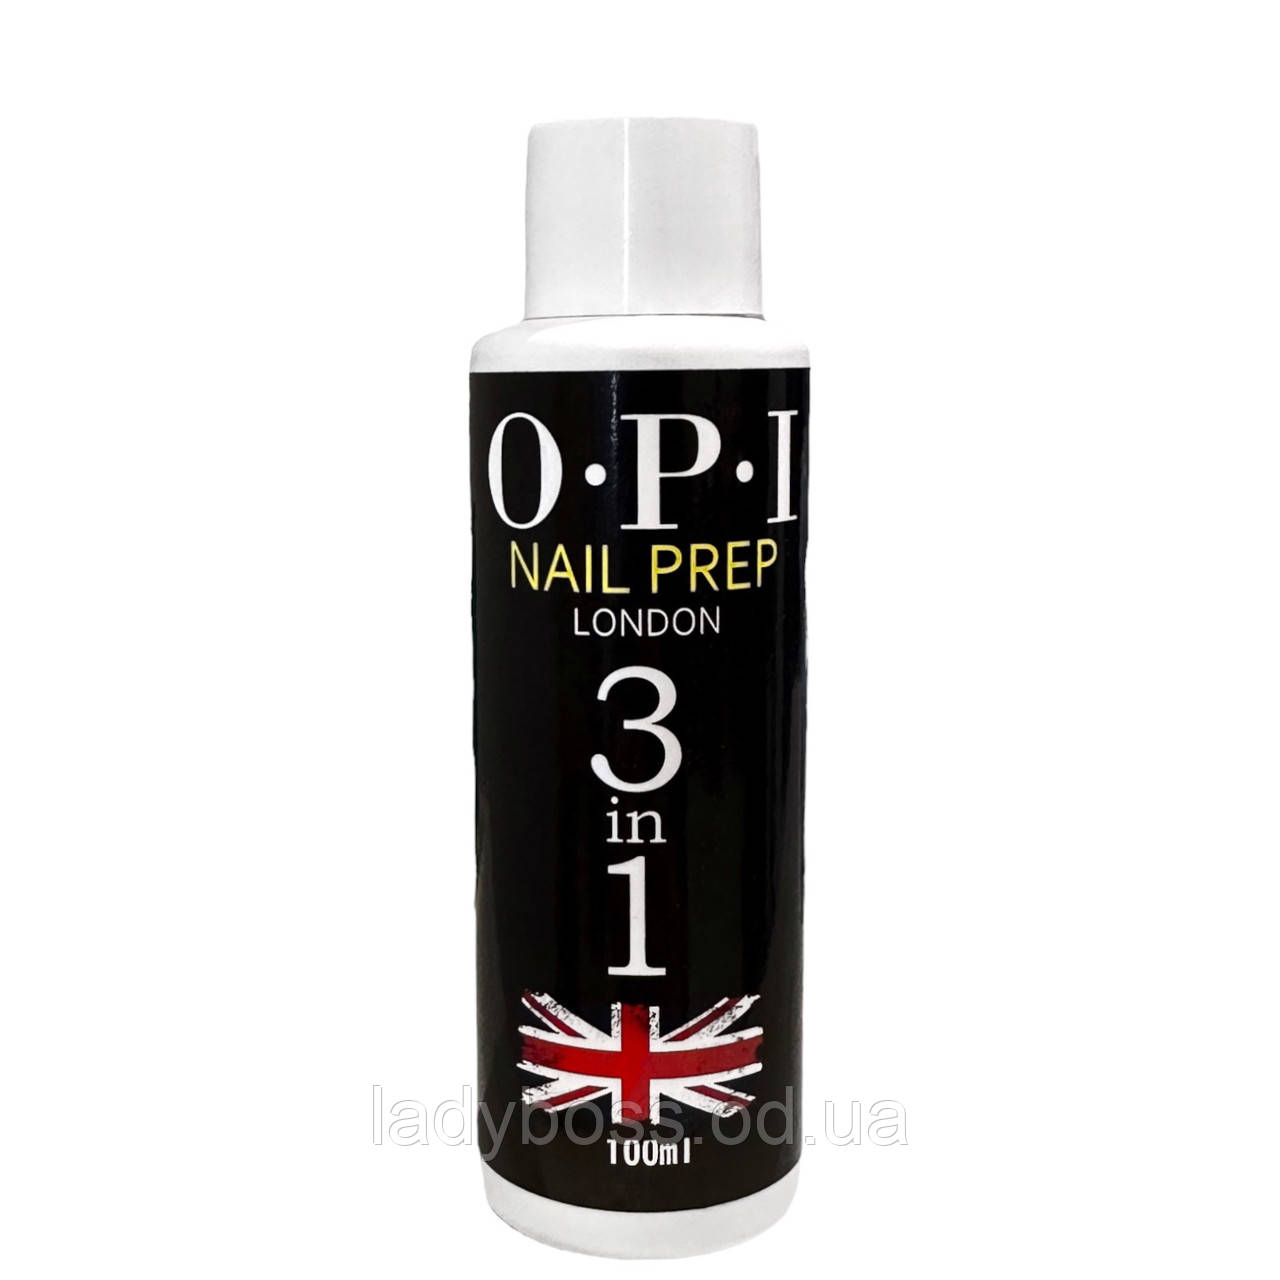 Рідина OPI Nail Prep 3in1 (100 мл.) для знежирення, зняття липкого шару та очищення кистей